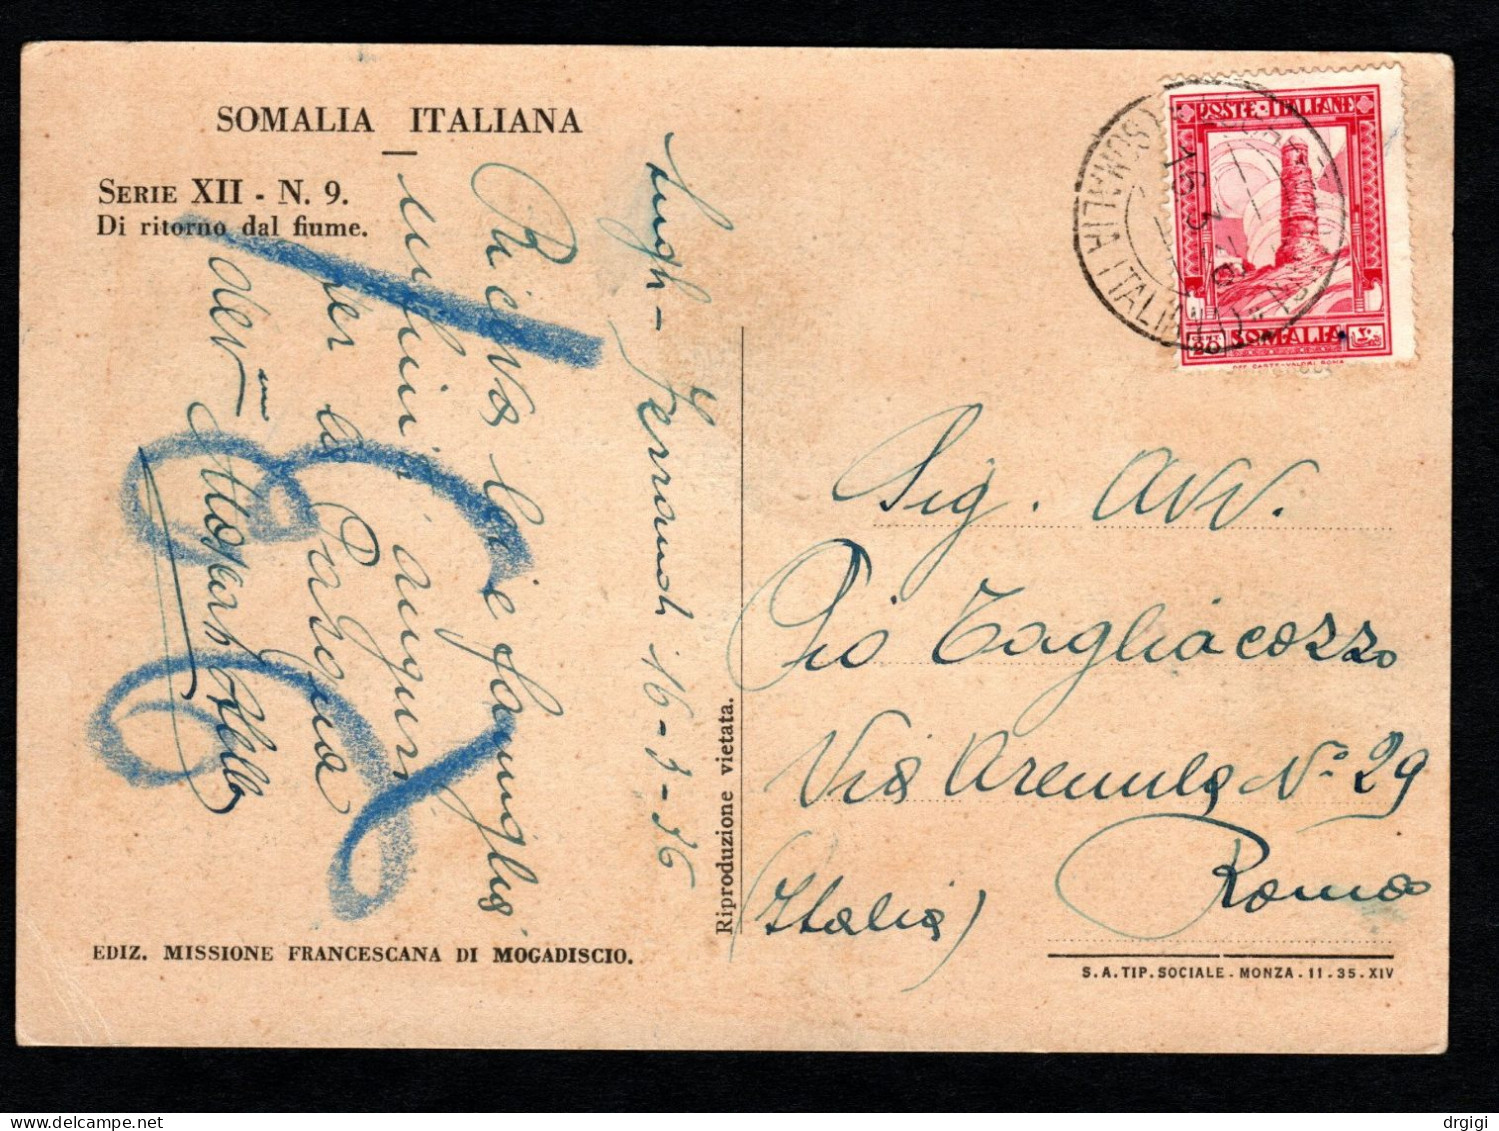 SOMALIA ITALIANA, CARTOLINA 1936, SASS. 217, LUGH FERRANDI X ROMA - RARO - Somalie